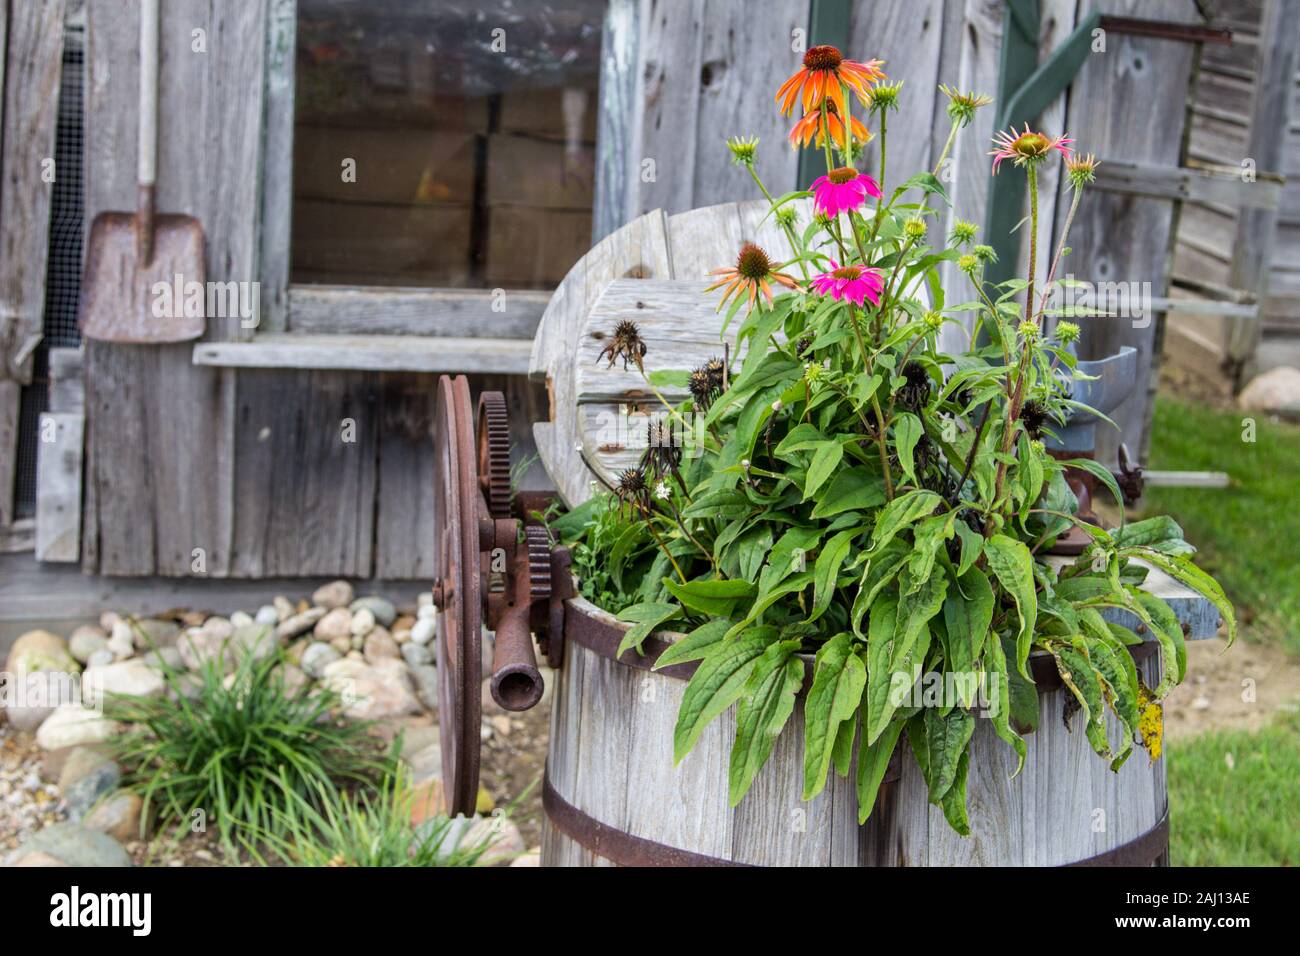 Country Style Garden. Topfpflanzen, Schaufel und kleine, malerische Holz garten Gartenhaus. Stockfoto